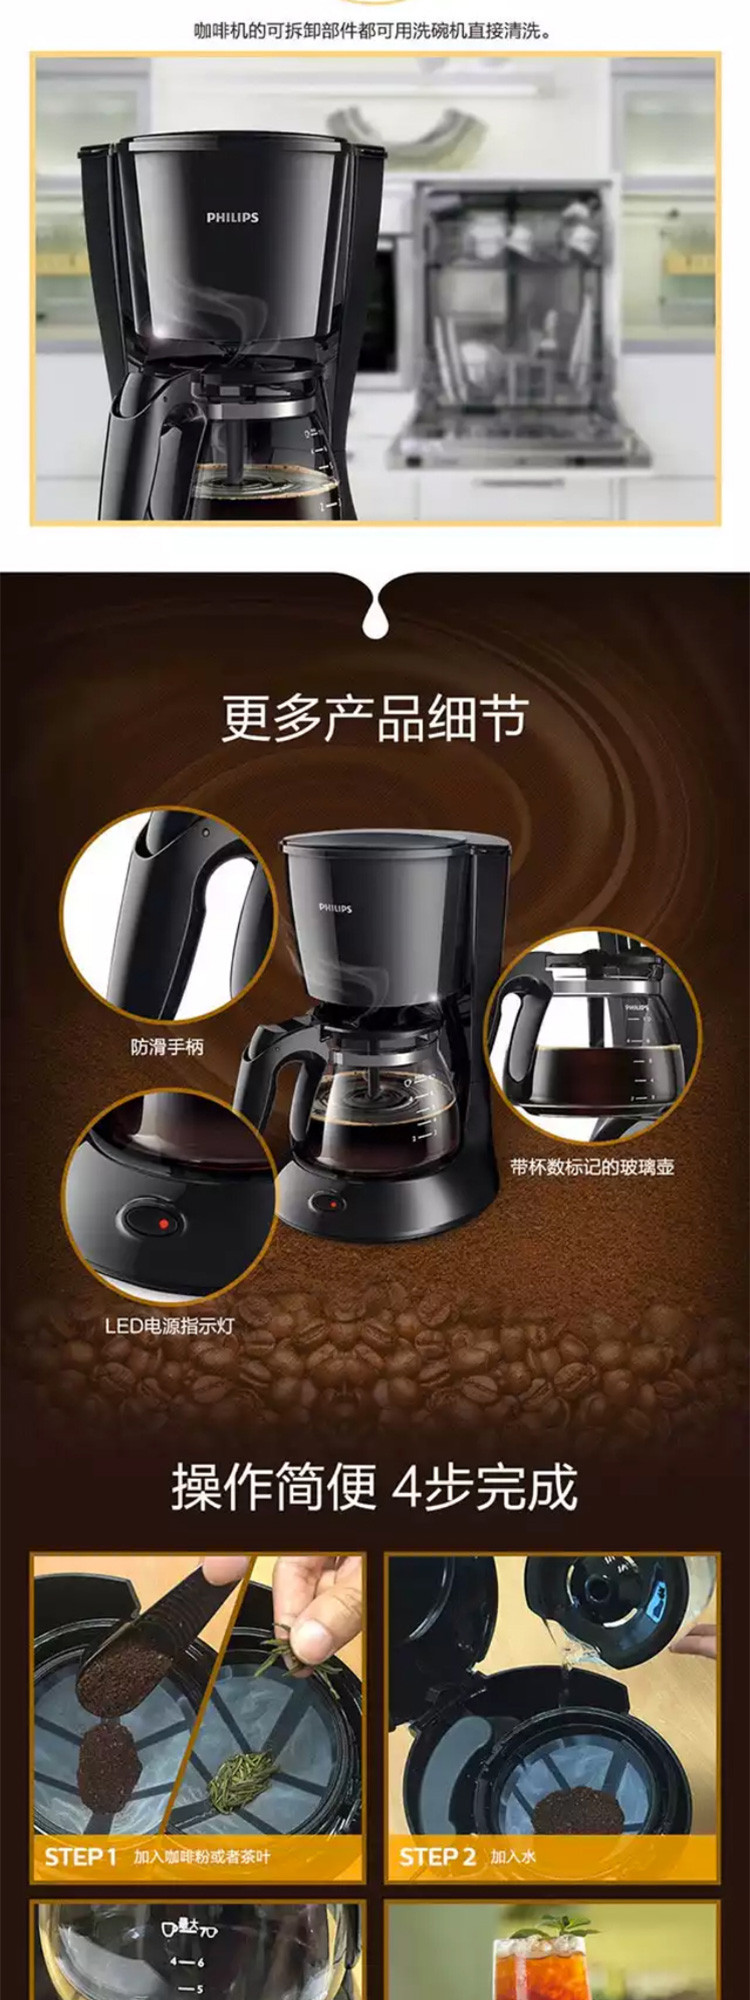 飞利浦 滴漏式咖啡机 HD7432/20